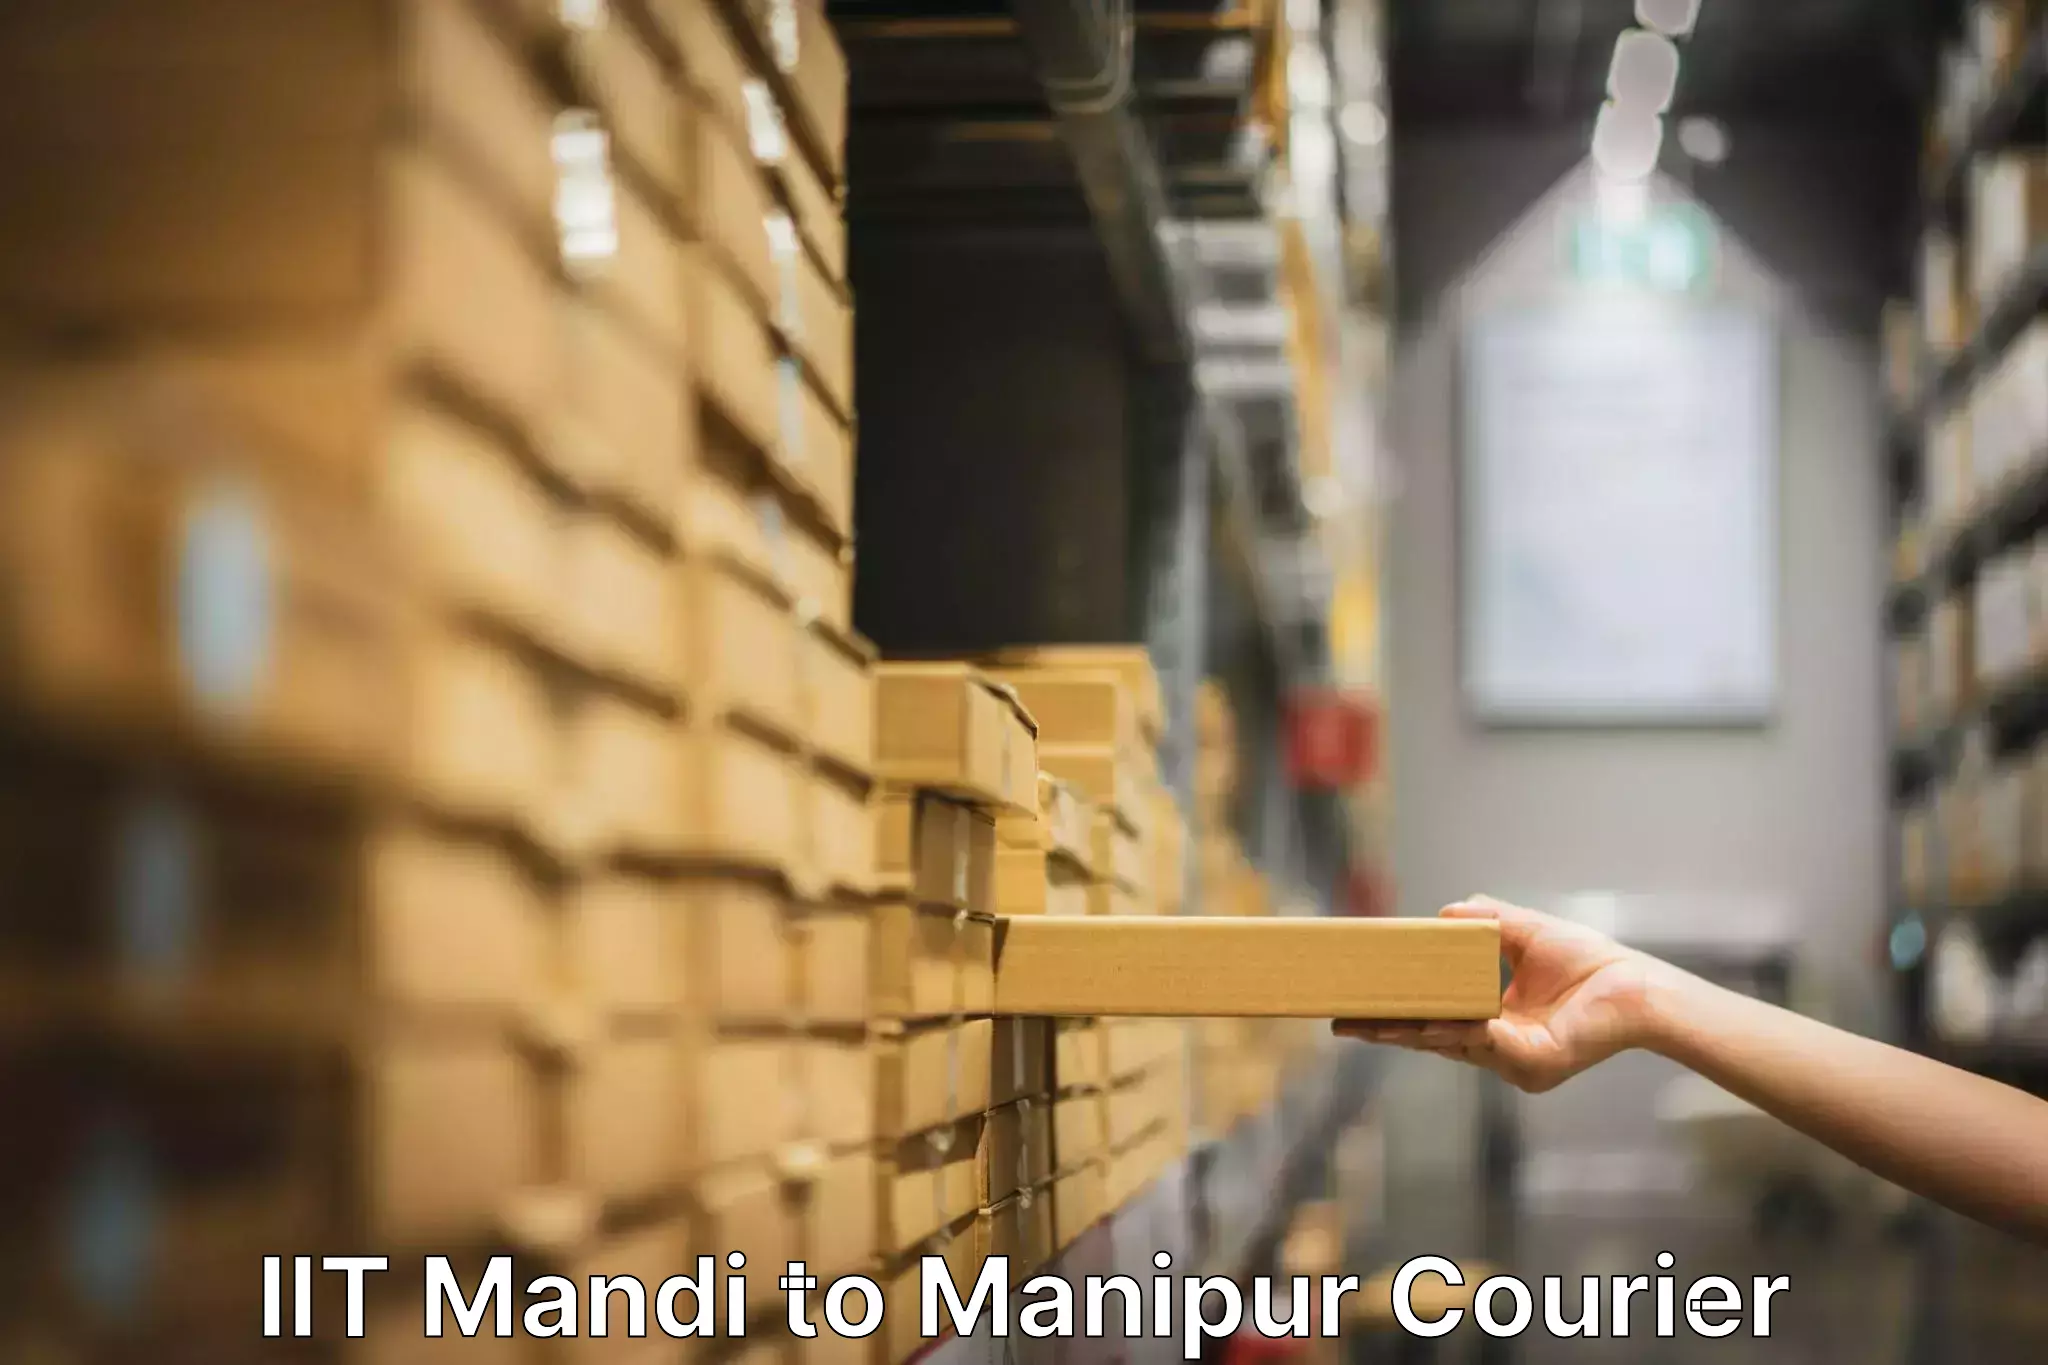 Quality moving and storage IIT Mandi to Churachandpur